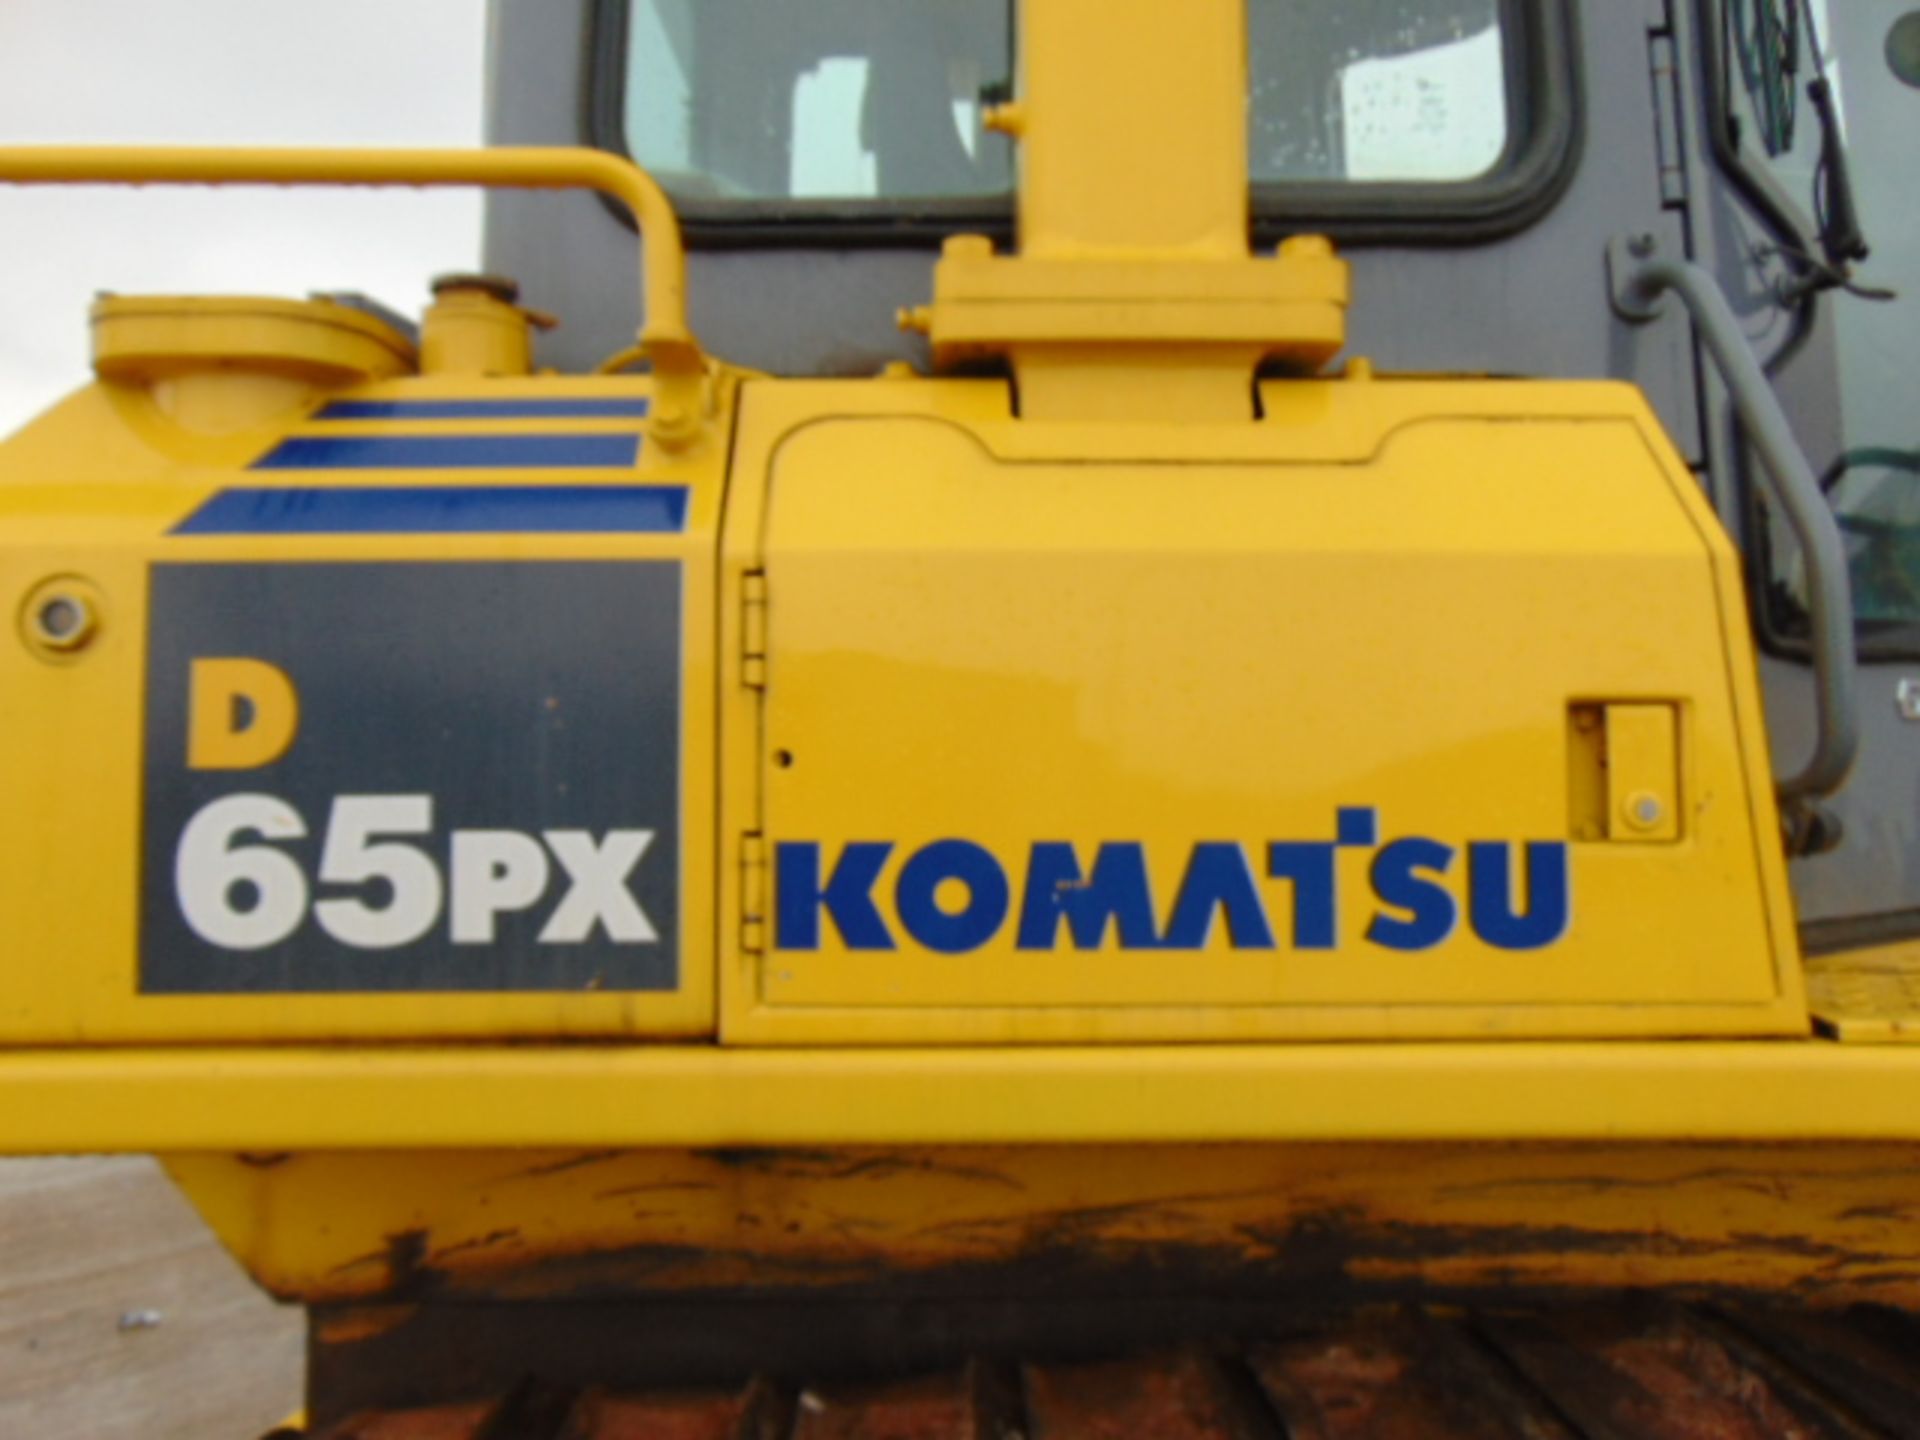 Komatsu D65PX-15 Bull Dozer Crawler Tractor - Image 17 of 26